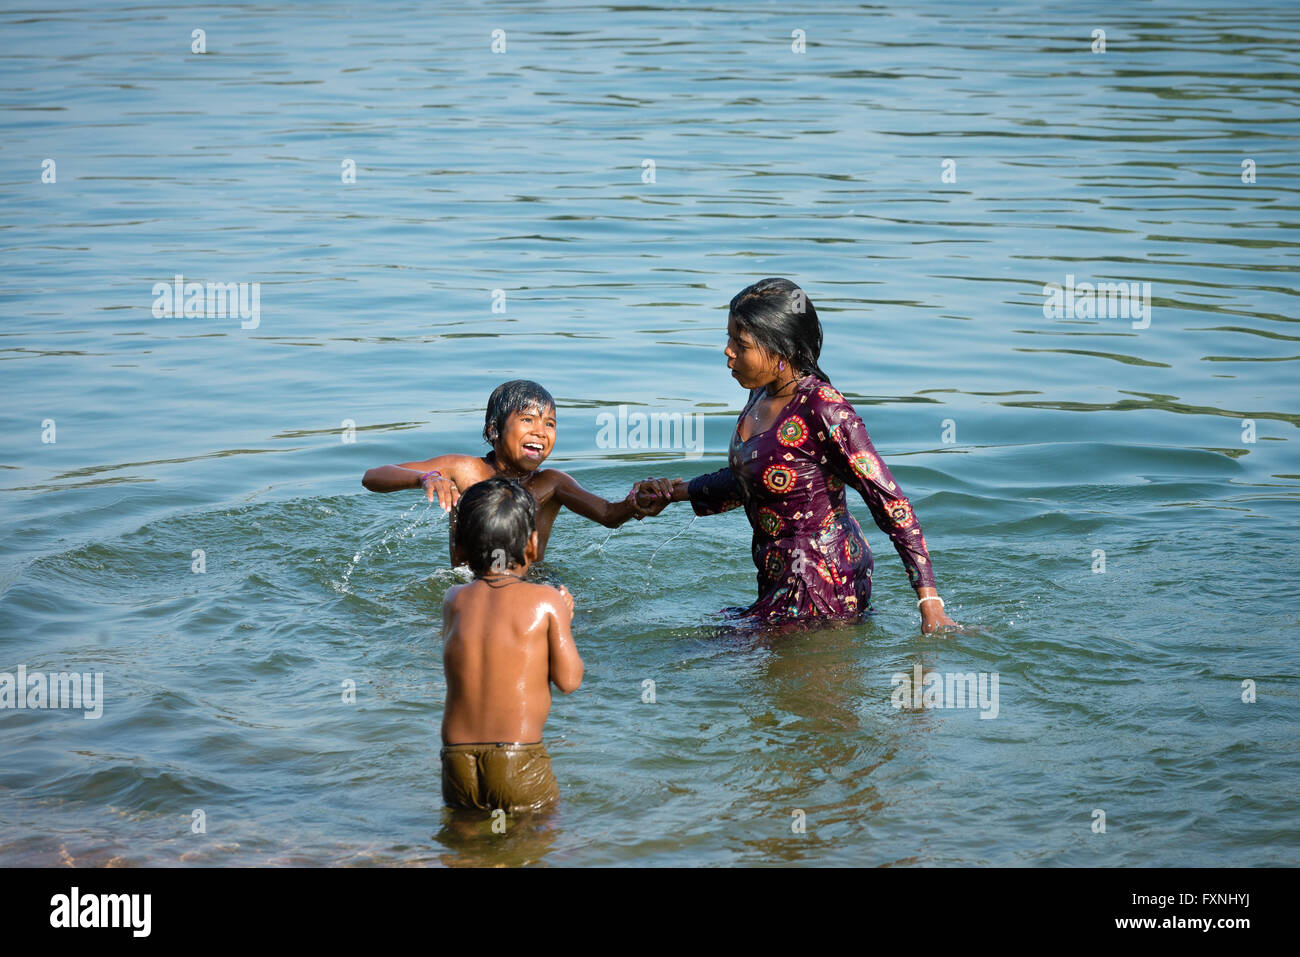 Kinder Schwimmen Im Fluss Betwa Orchha Indien Stockfotografie Alamy